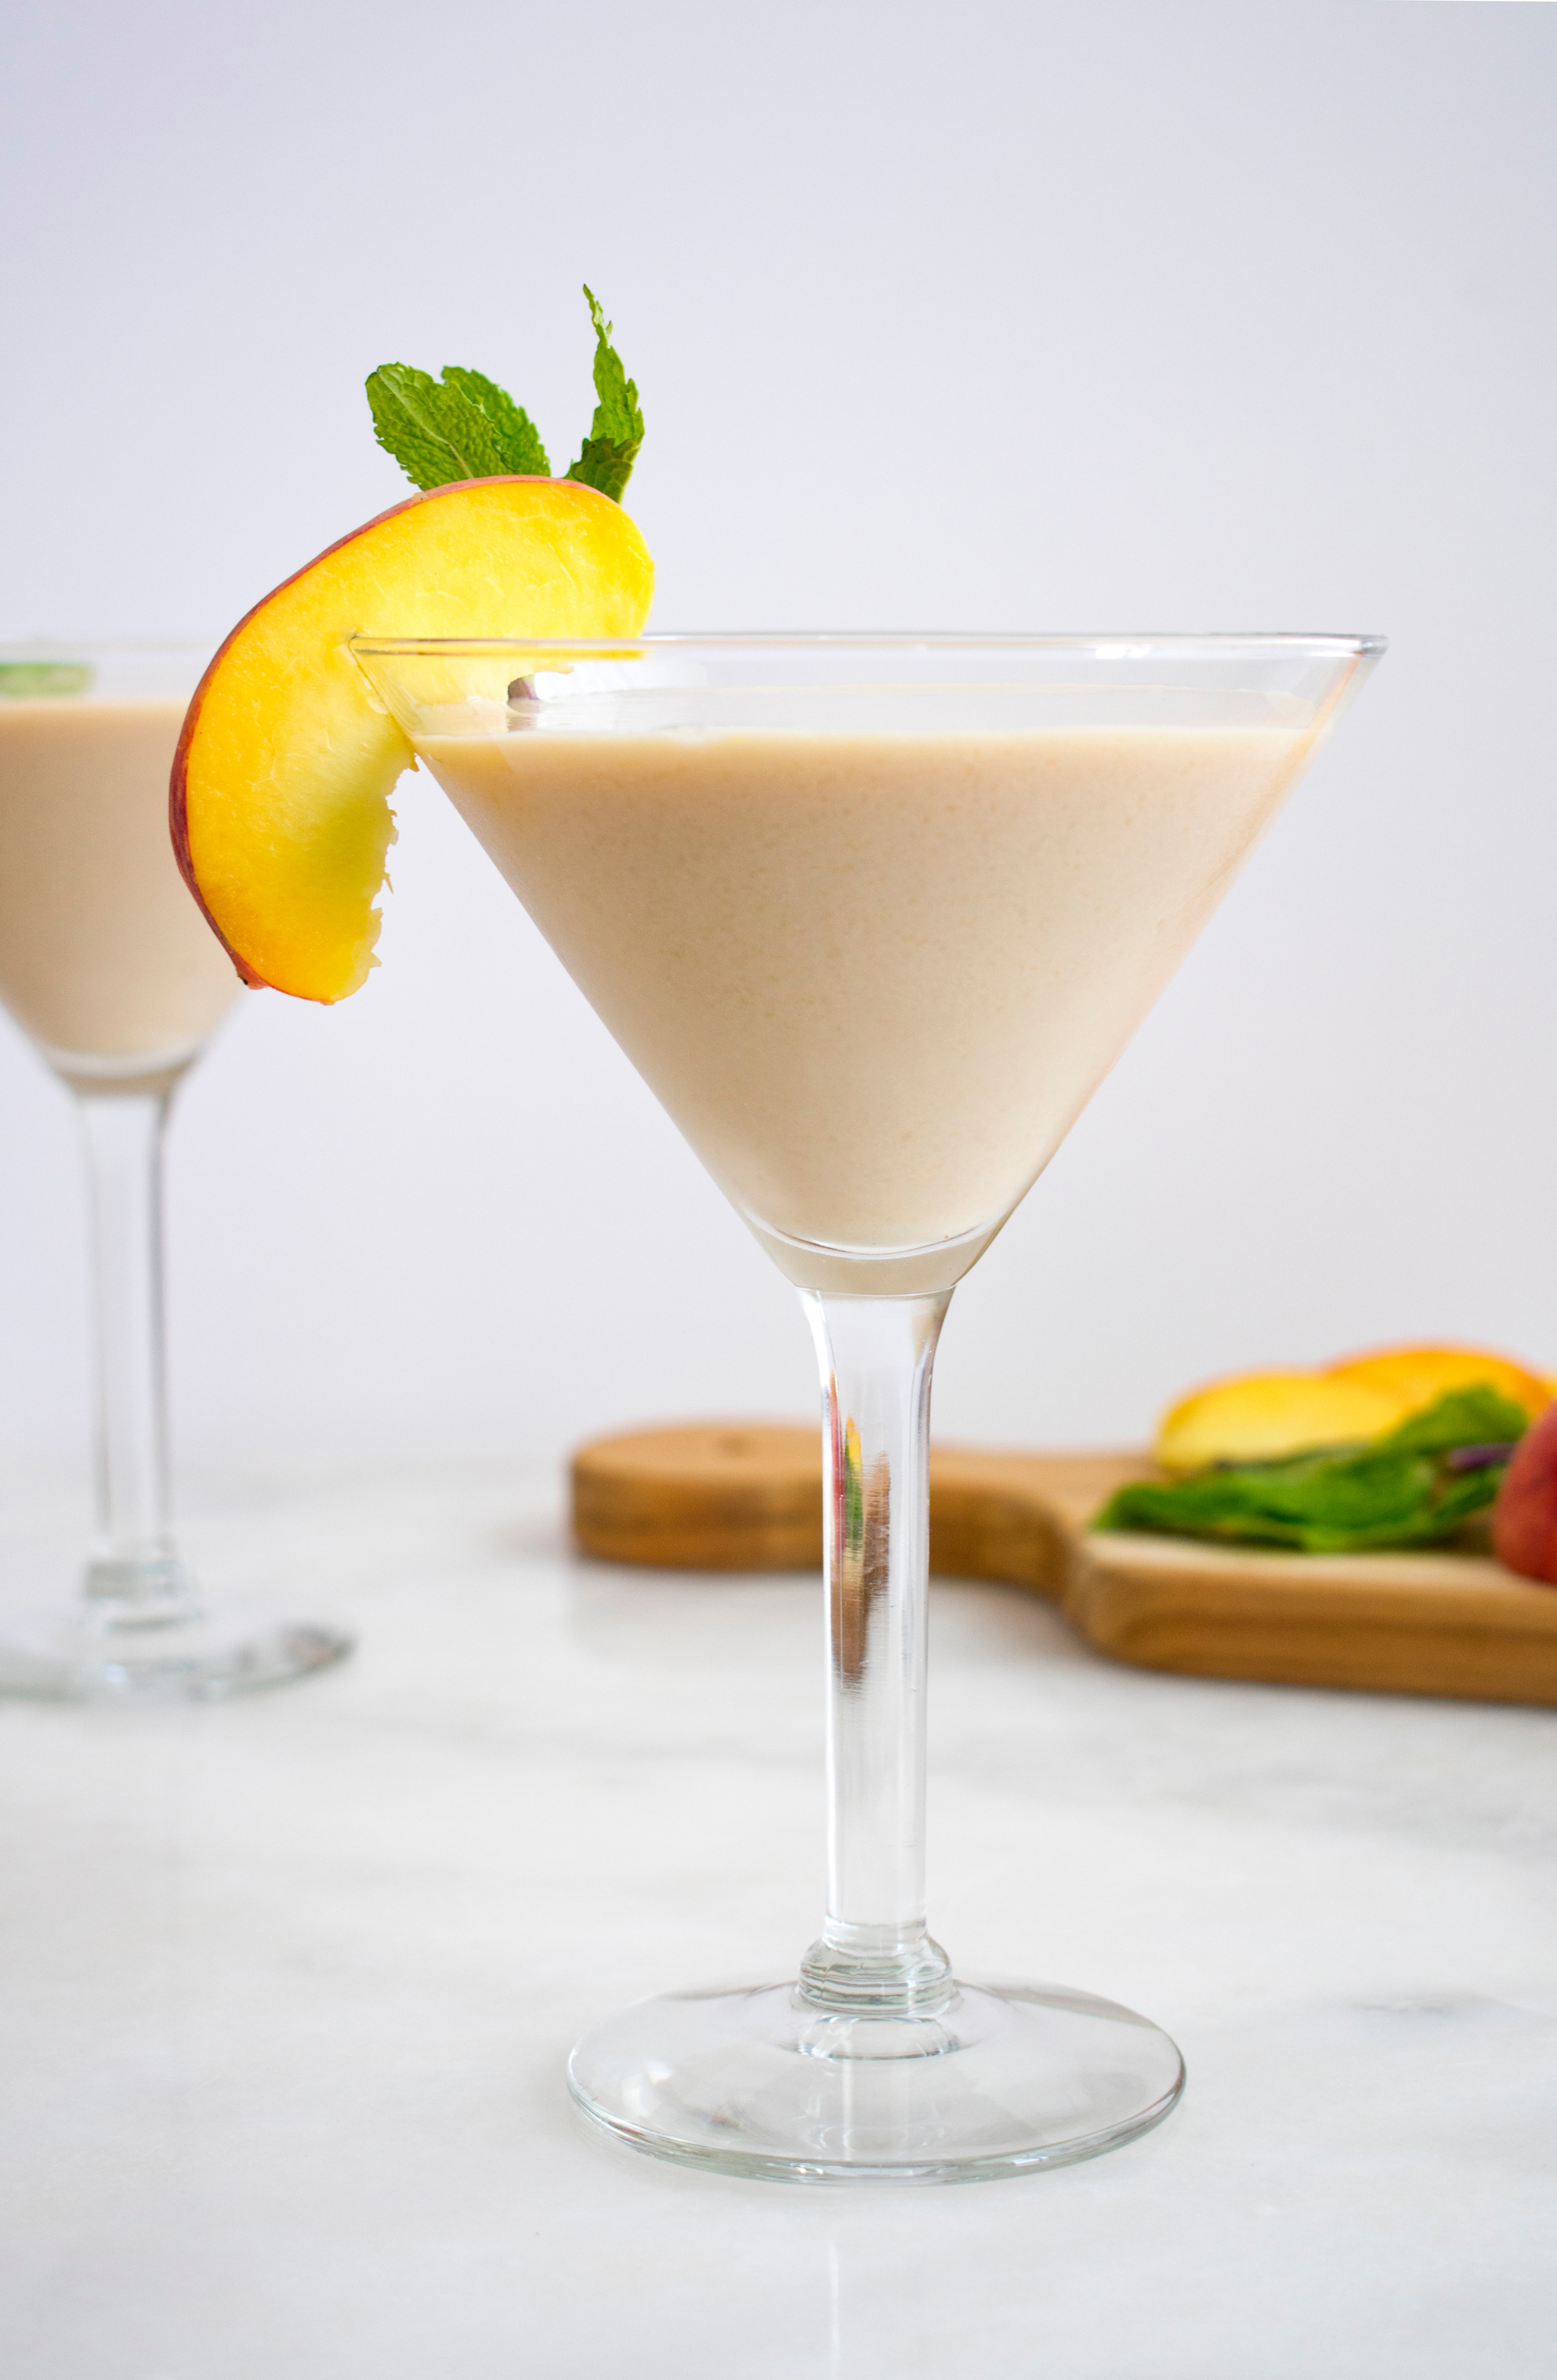 Condensed Milk Peach cream liqueur cocktail